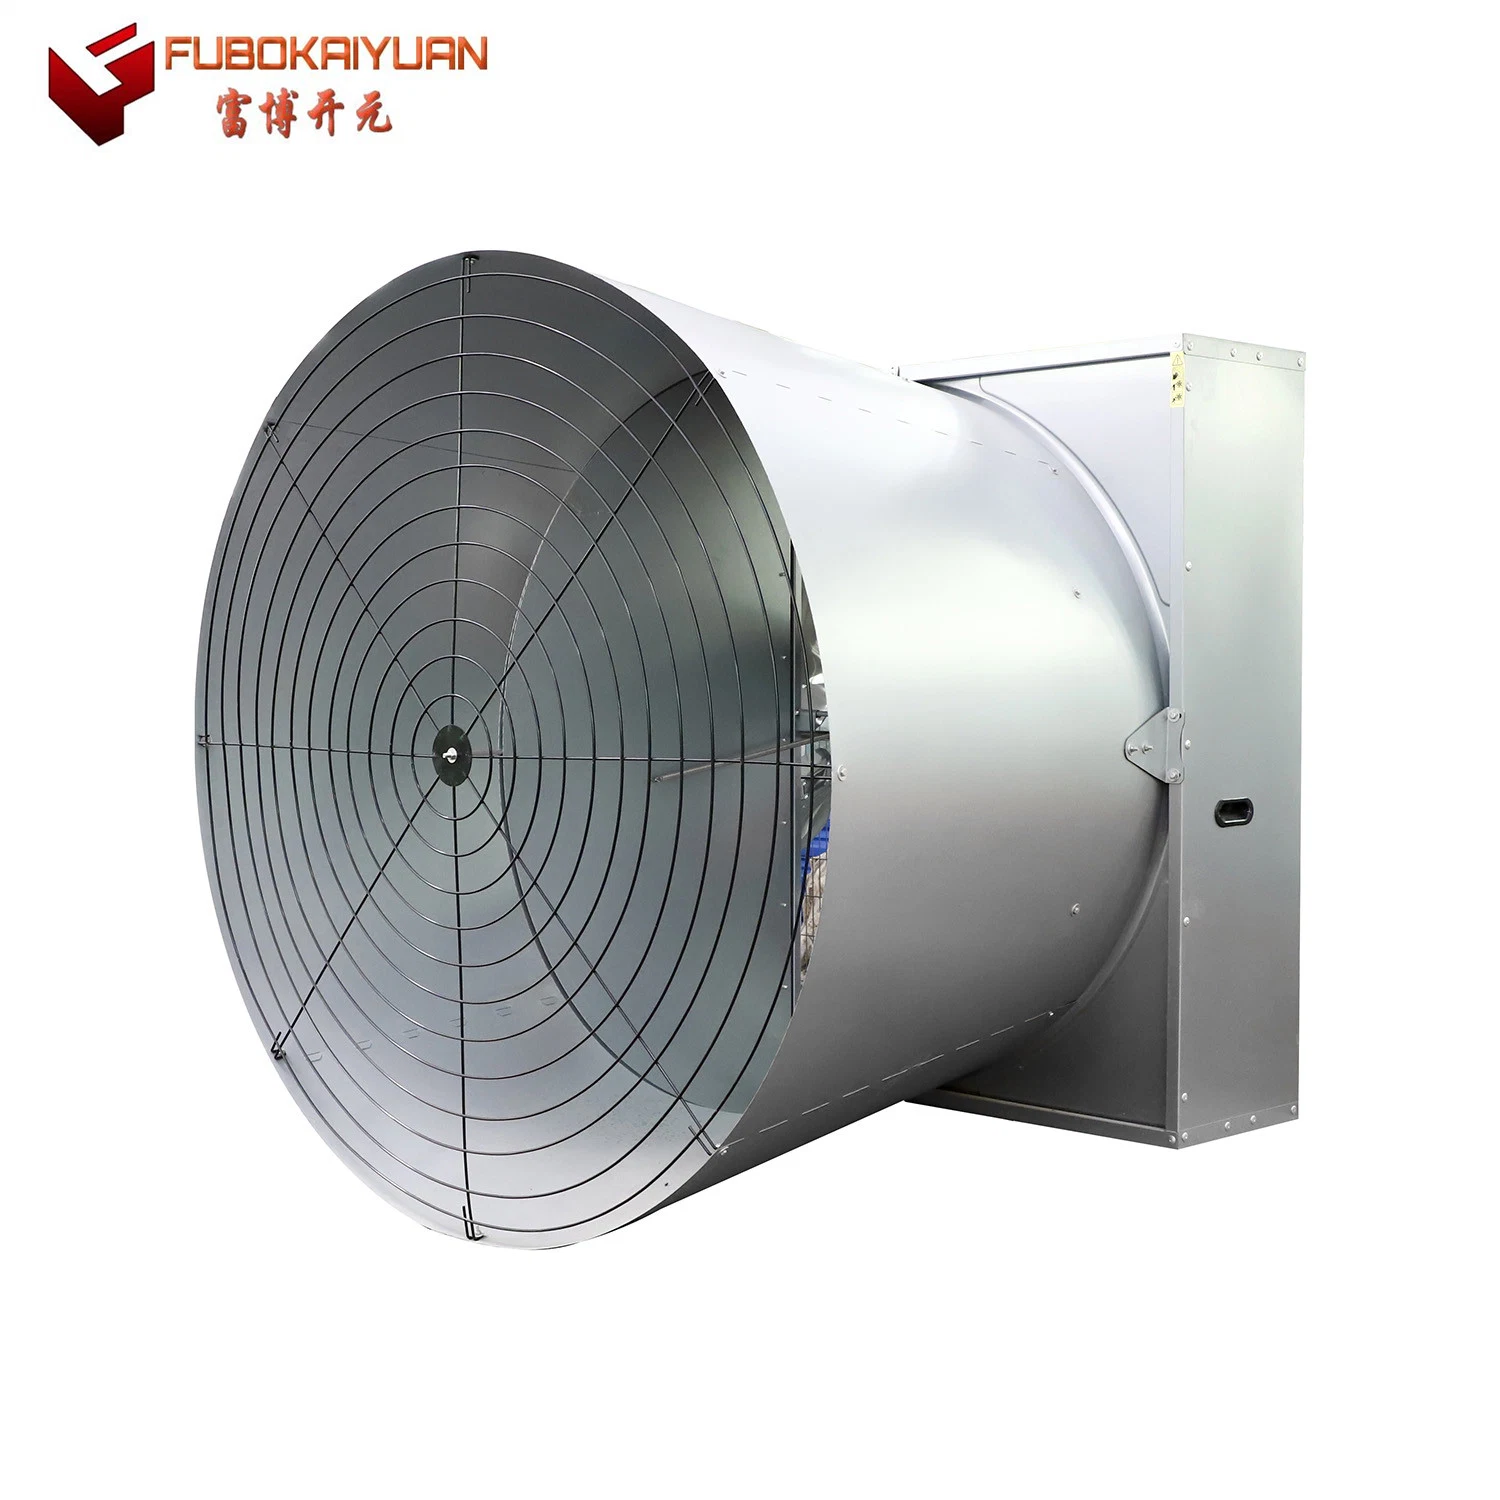 Cono de refrigeración de tipo mariposa ventilador para taller/Gases de Efecto/granja avícola